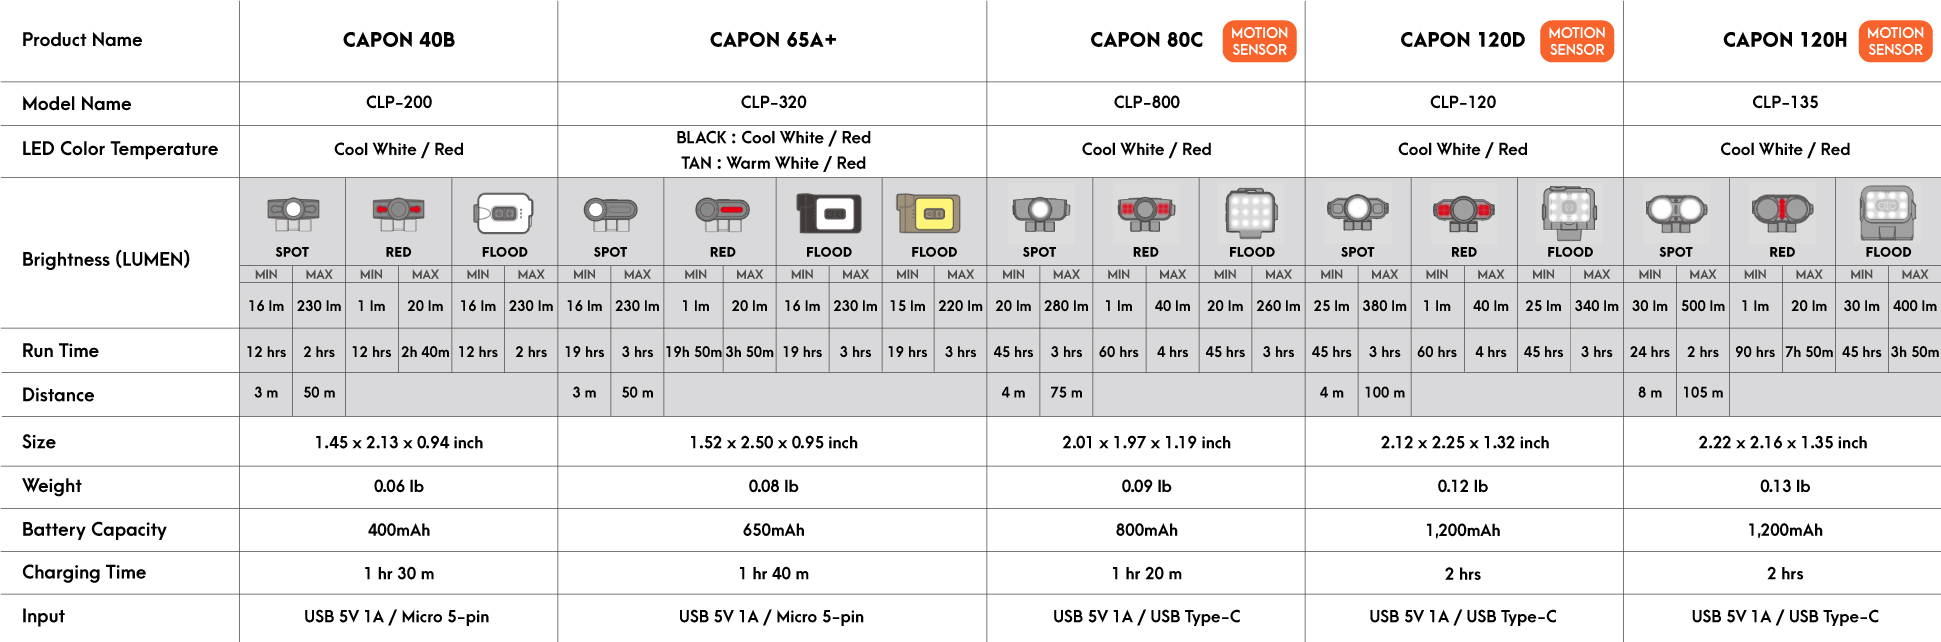 Cap Light / caplight / Head Light / Headlight / Capon / Canada Light / Motion Sensor / Motion sensor light